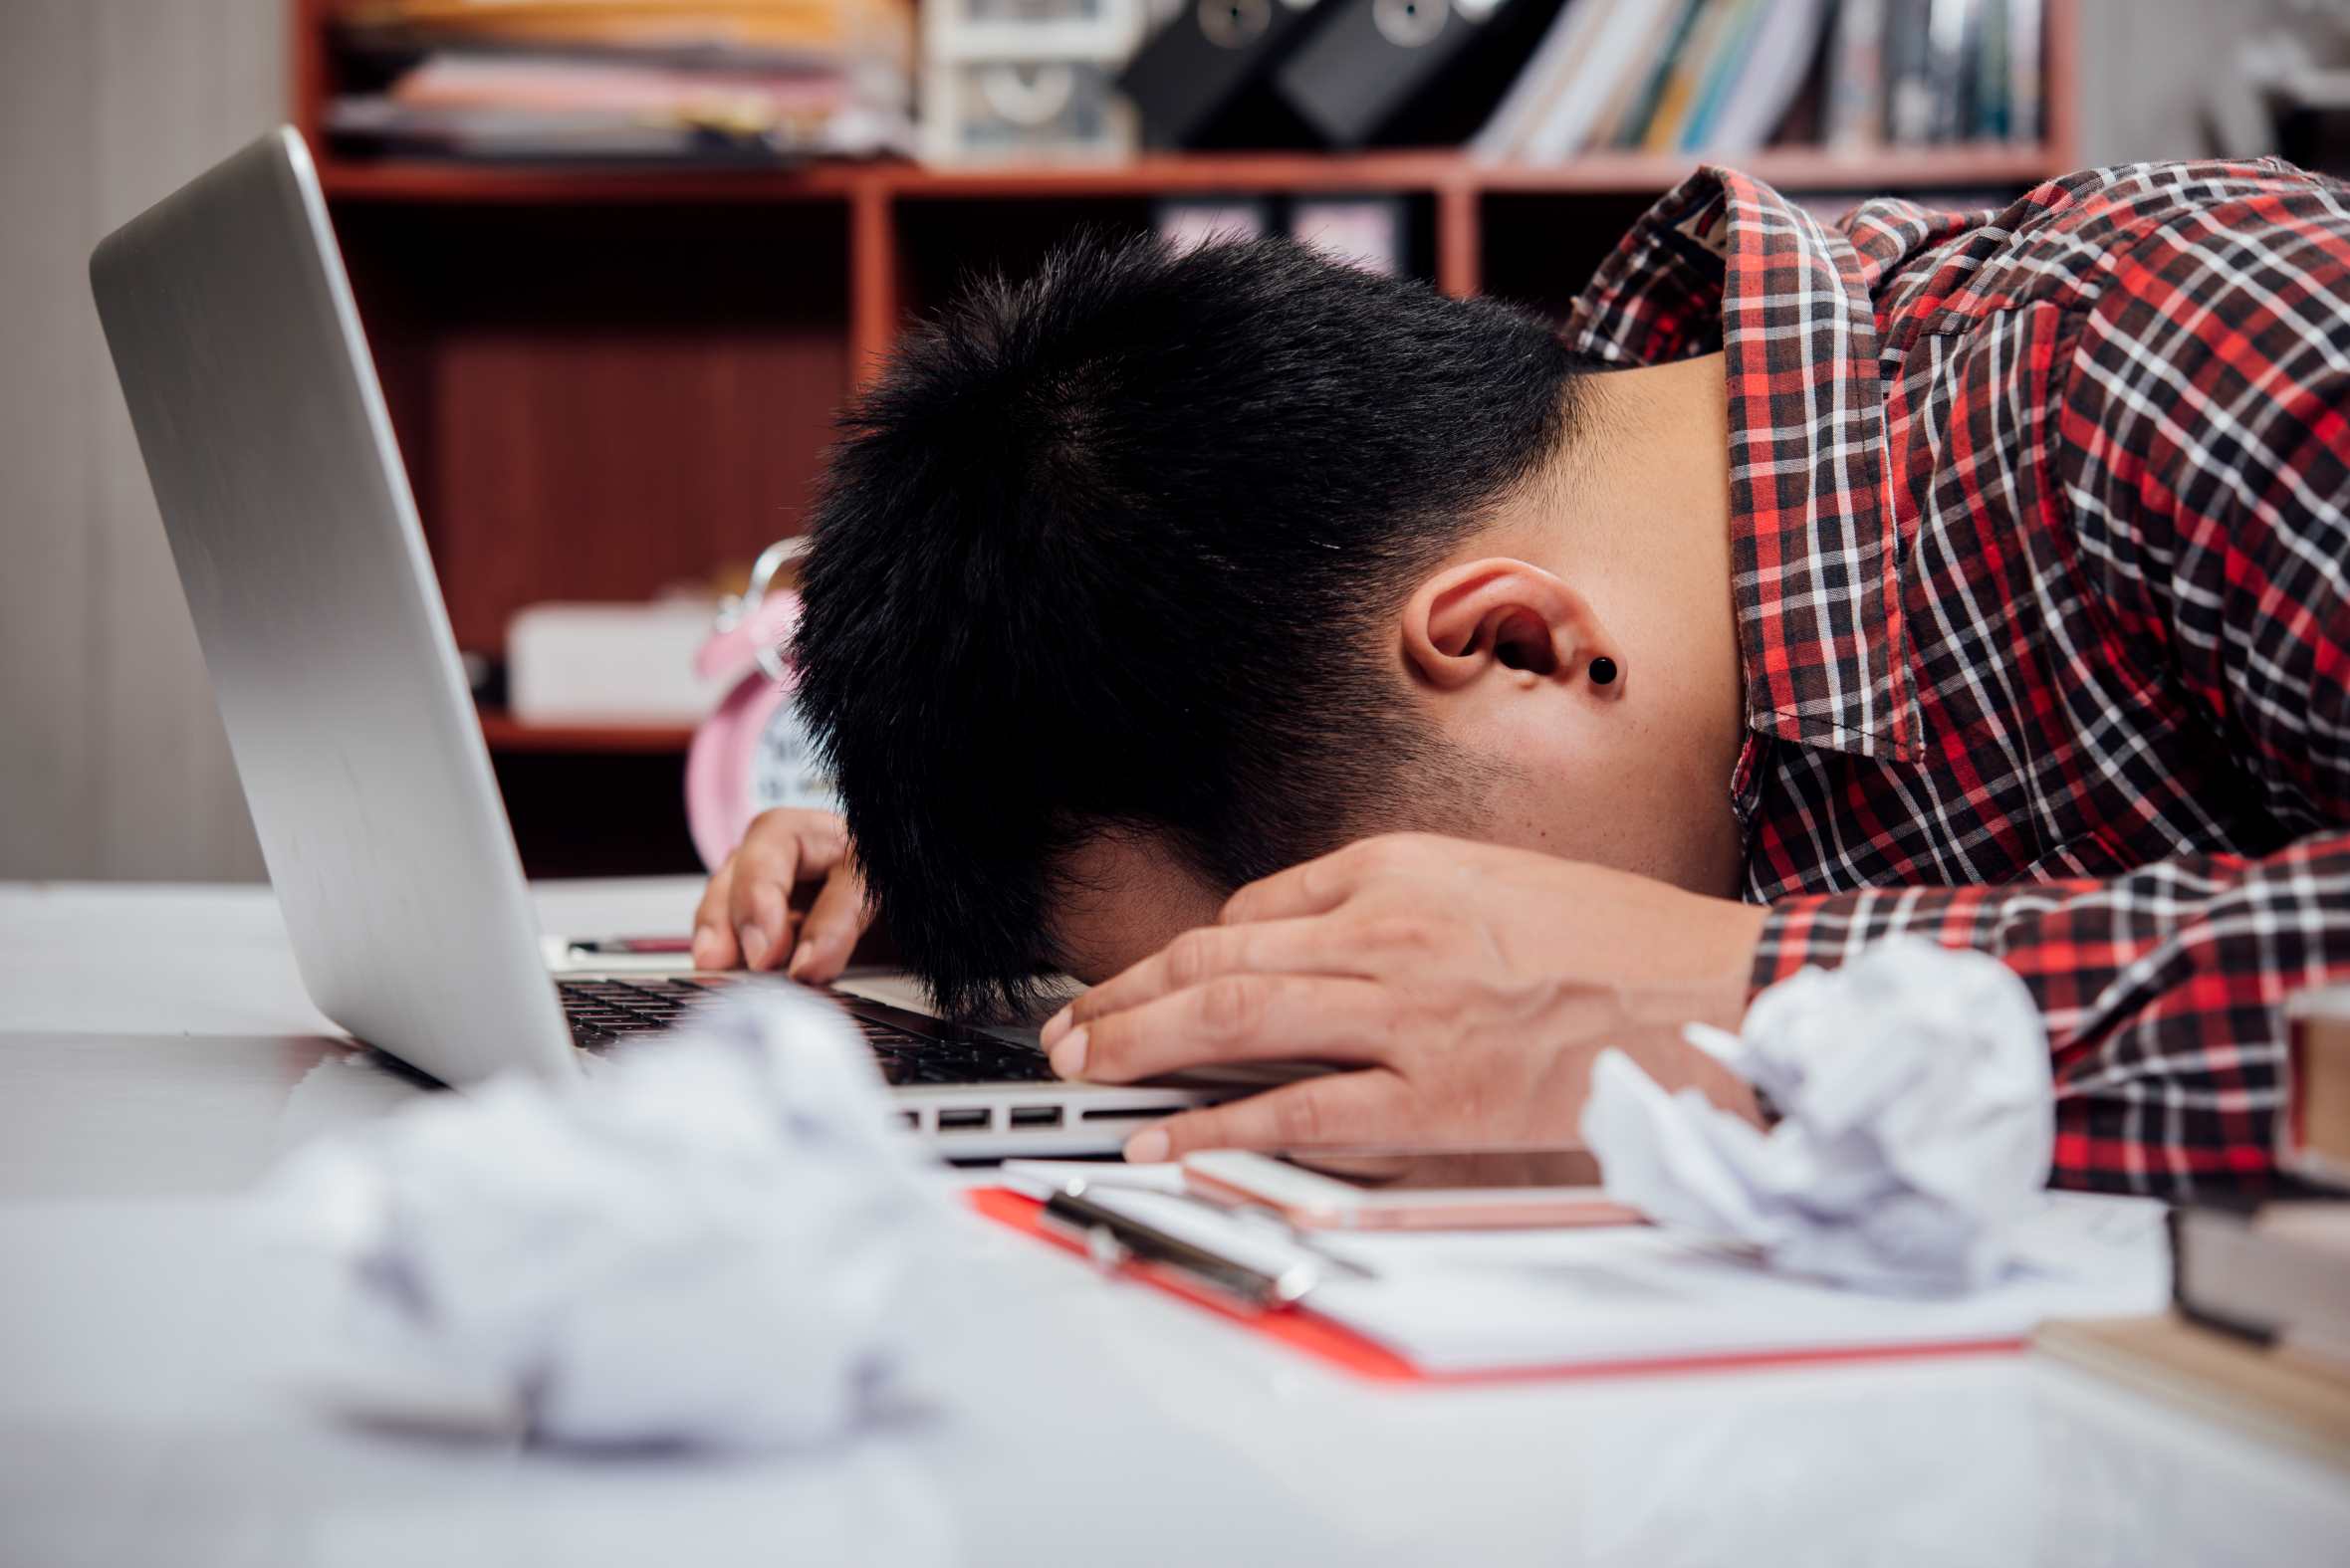 Tubuh Capek karena Masalah Pekerjaan, Kamu Bisa Coba Suplemen dan Vitamin untuk Mengatasi Kelelahan Ini